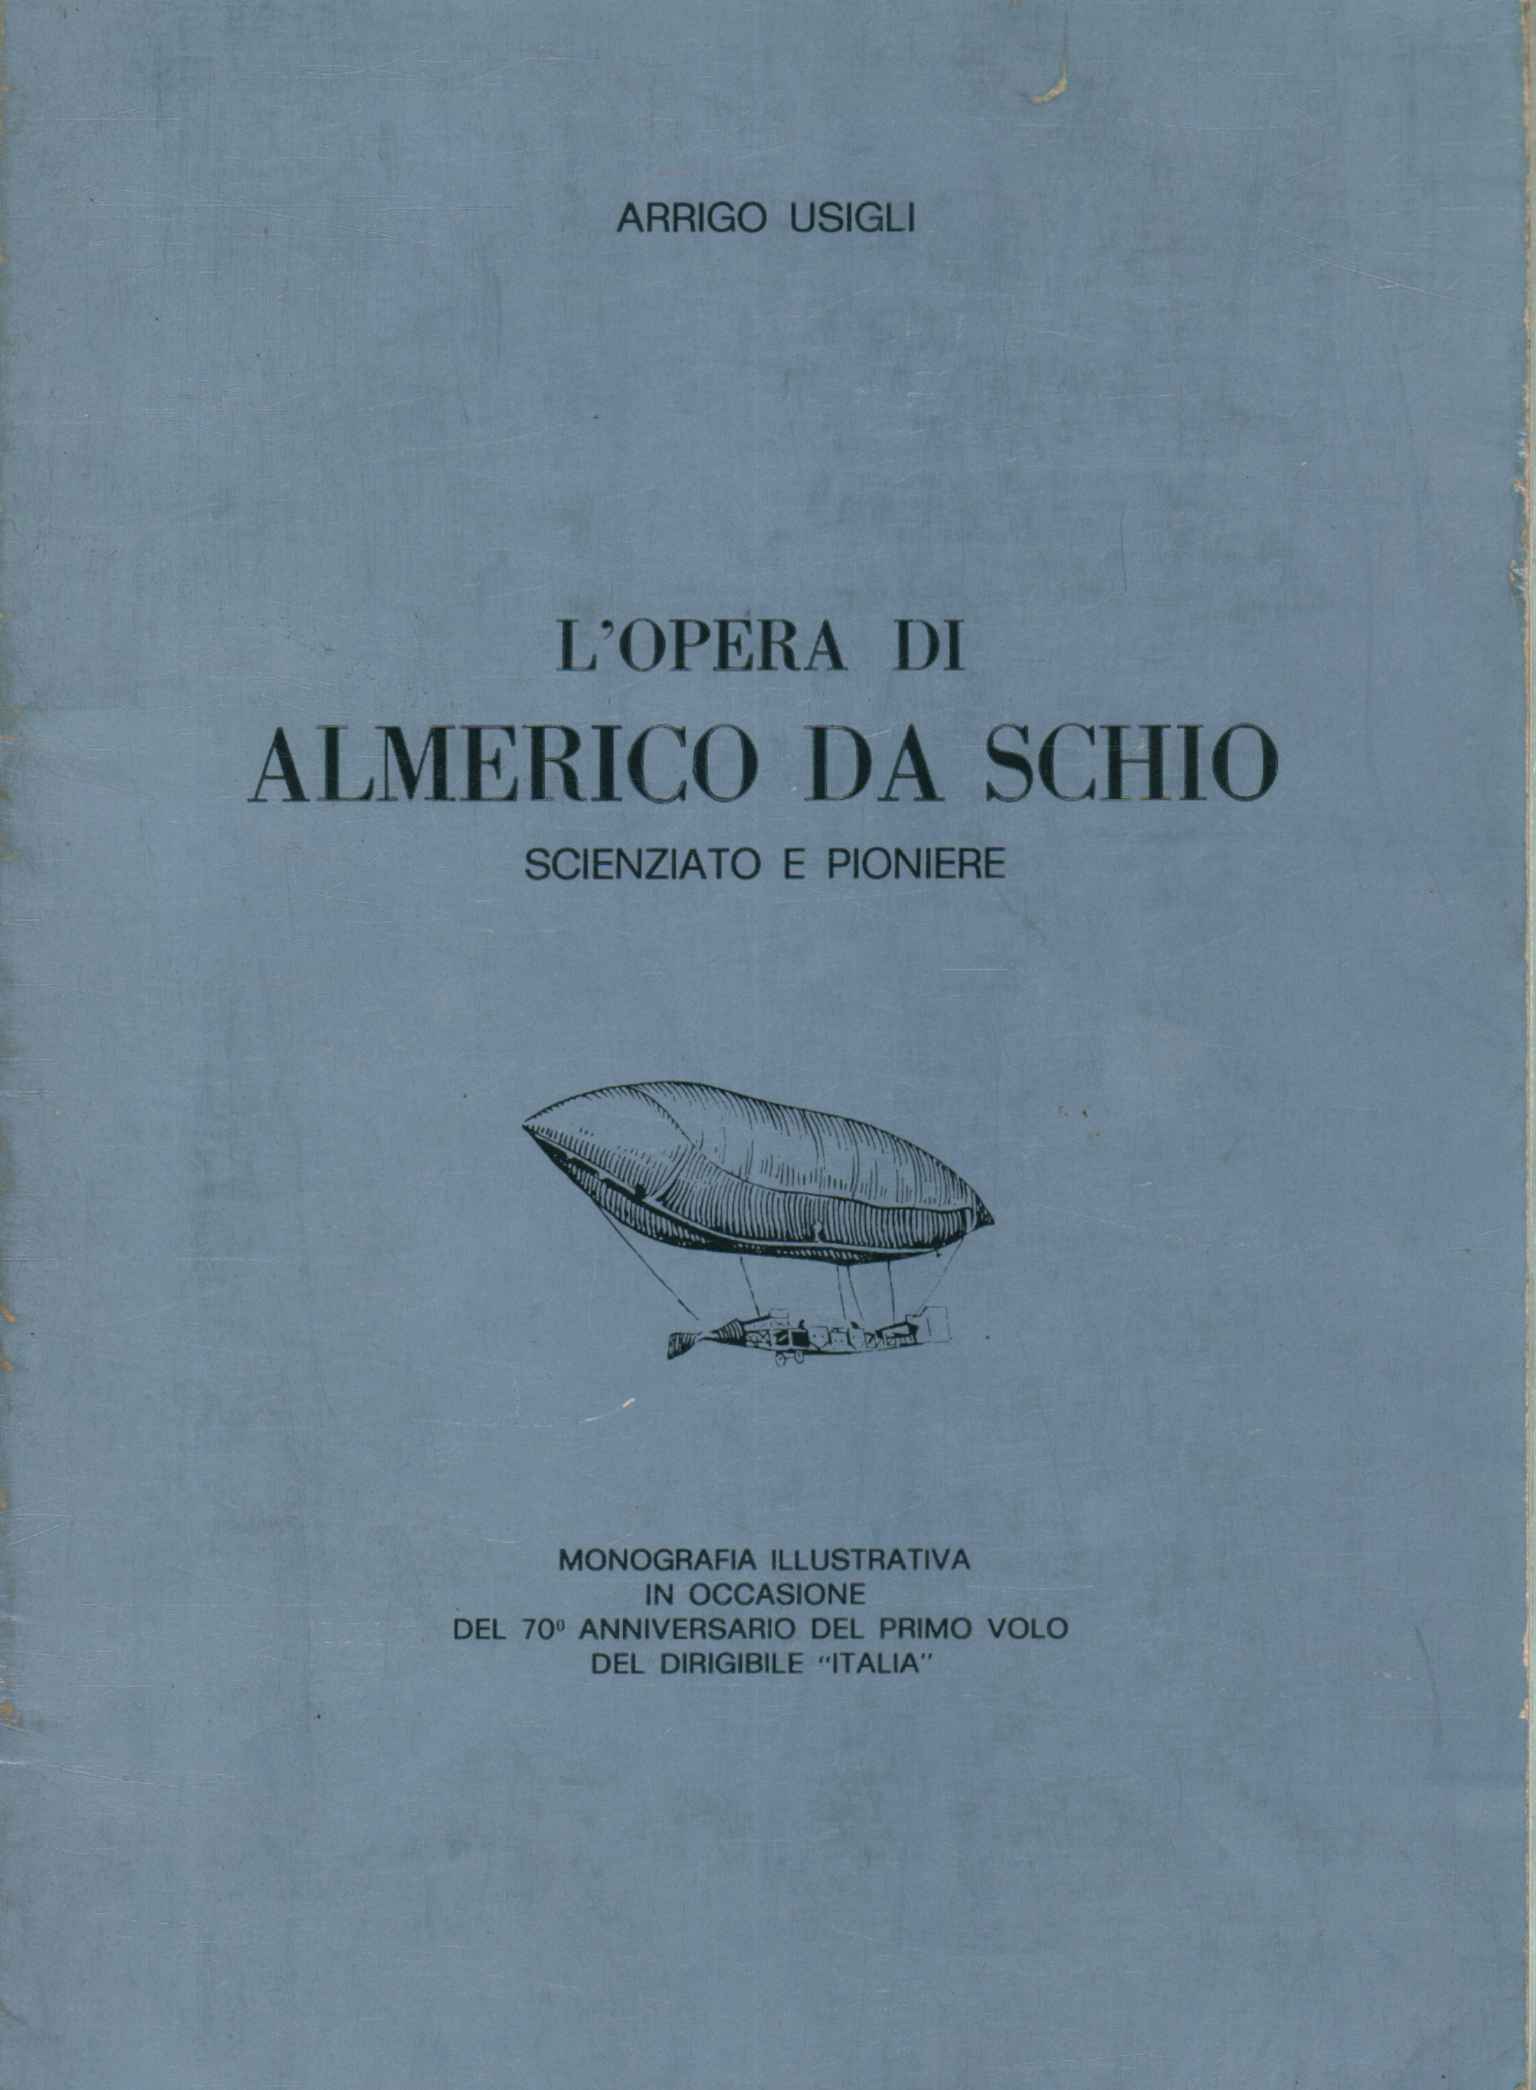 The work of Almerico da Schio